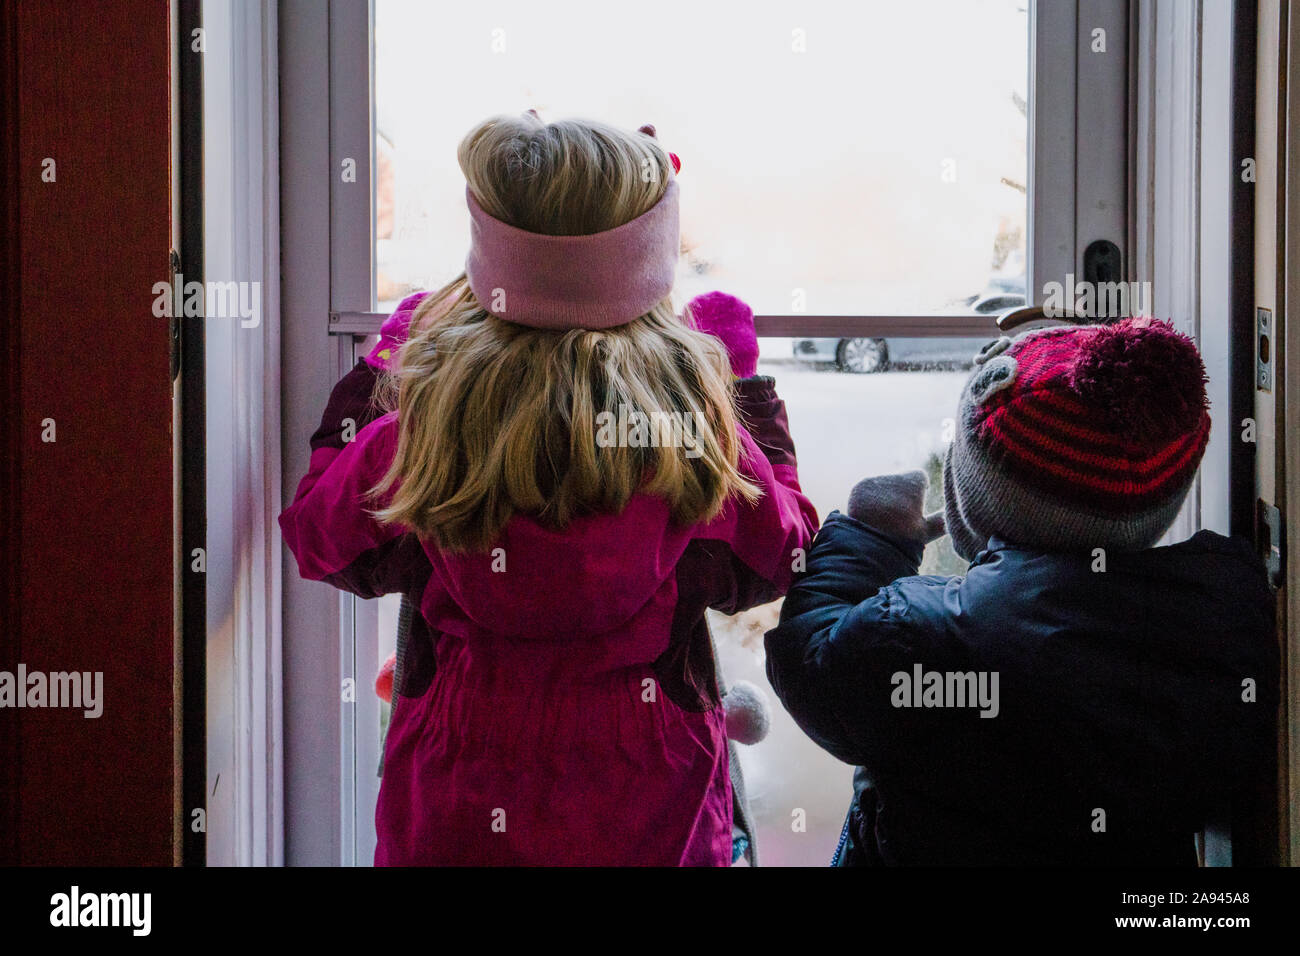 Zwei Kinder im Winter Kleidung aus einer Tür auf Schnee. Stockfoto